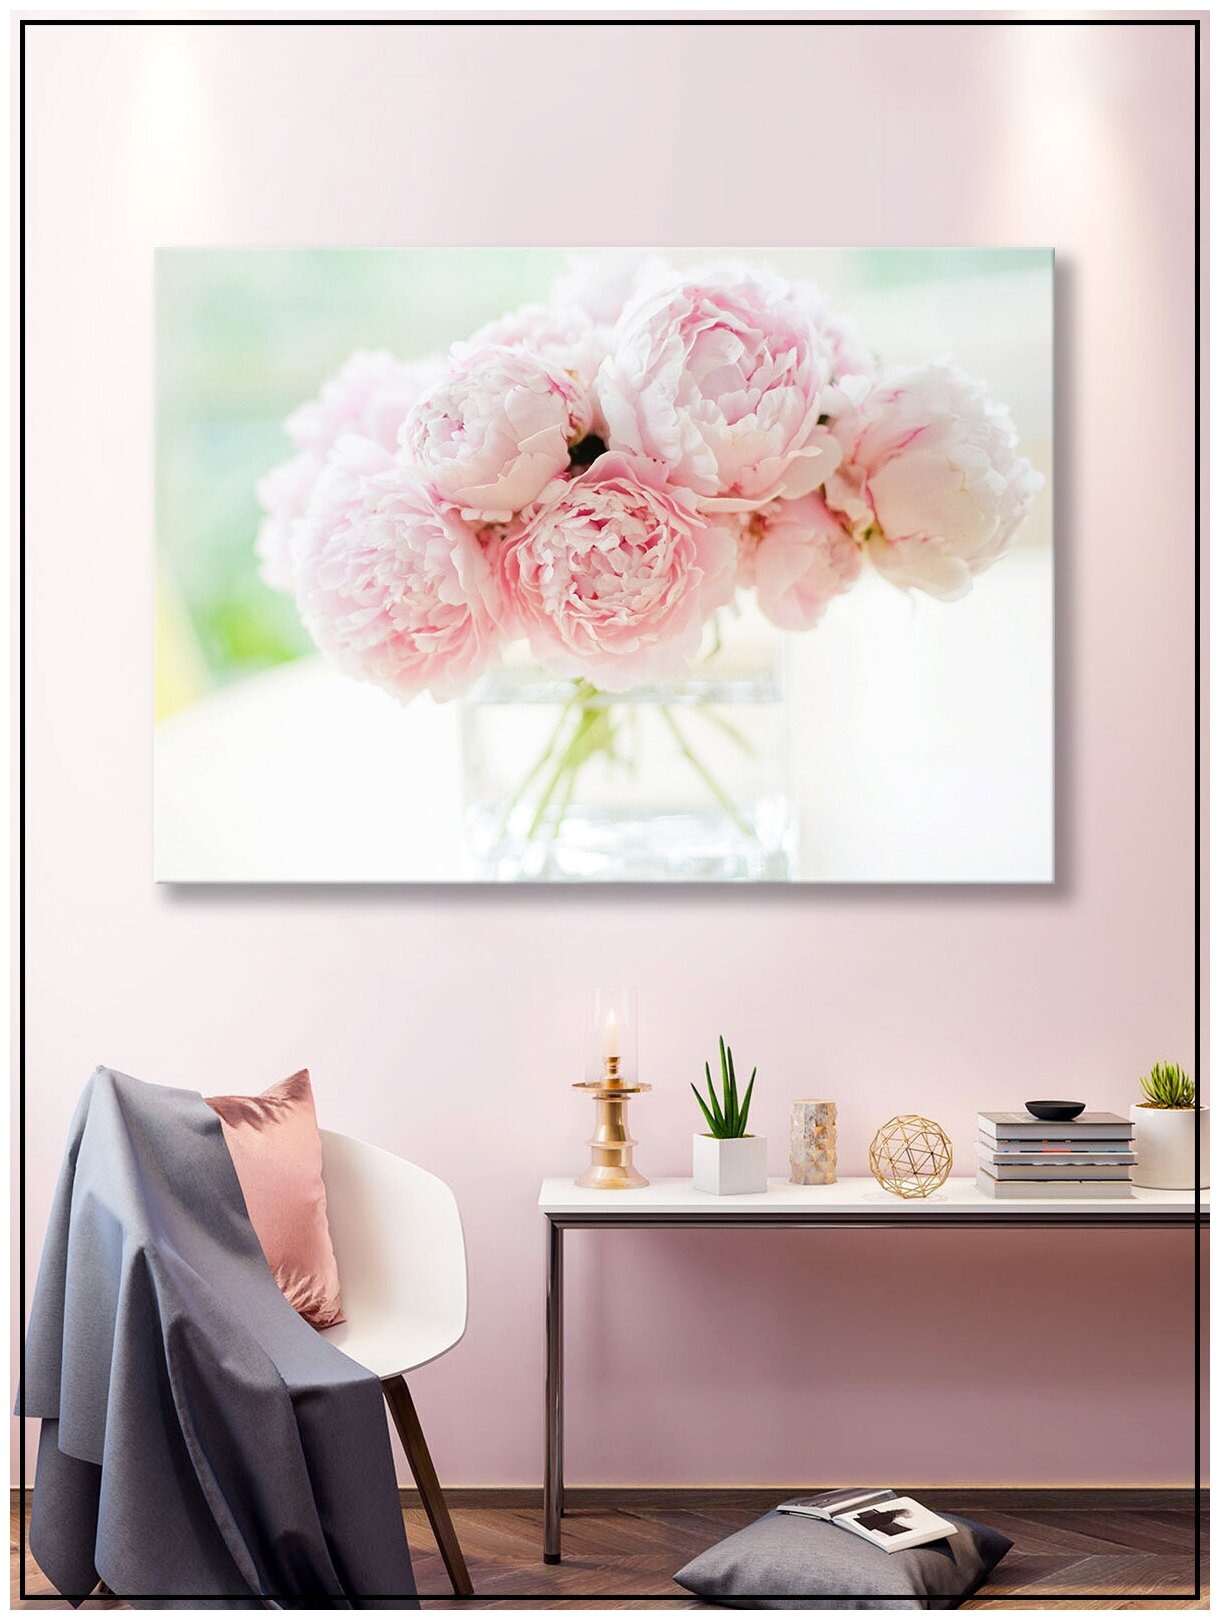 Картина для интерьера на натуральном хлопковом холсте "Букет розовых пионов", 30*40см, холст на подрамнике, картина в подарок для дома